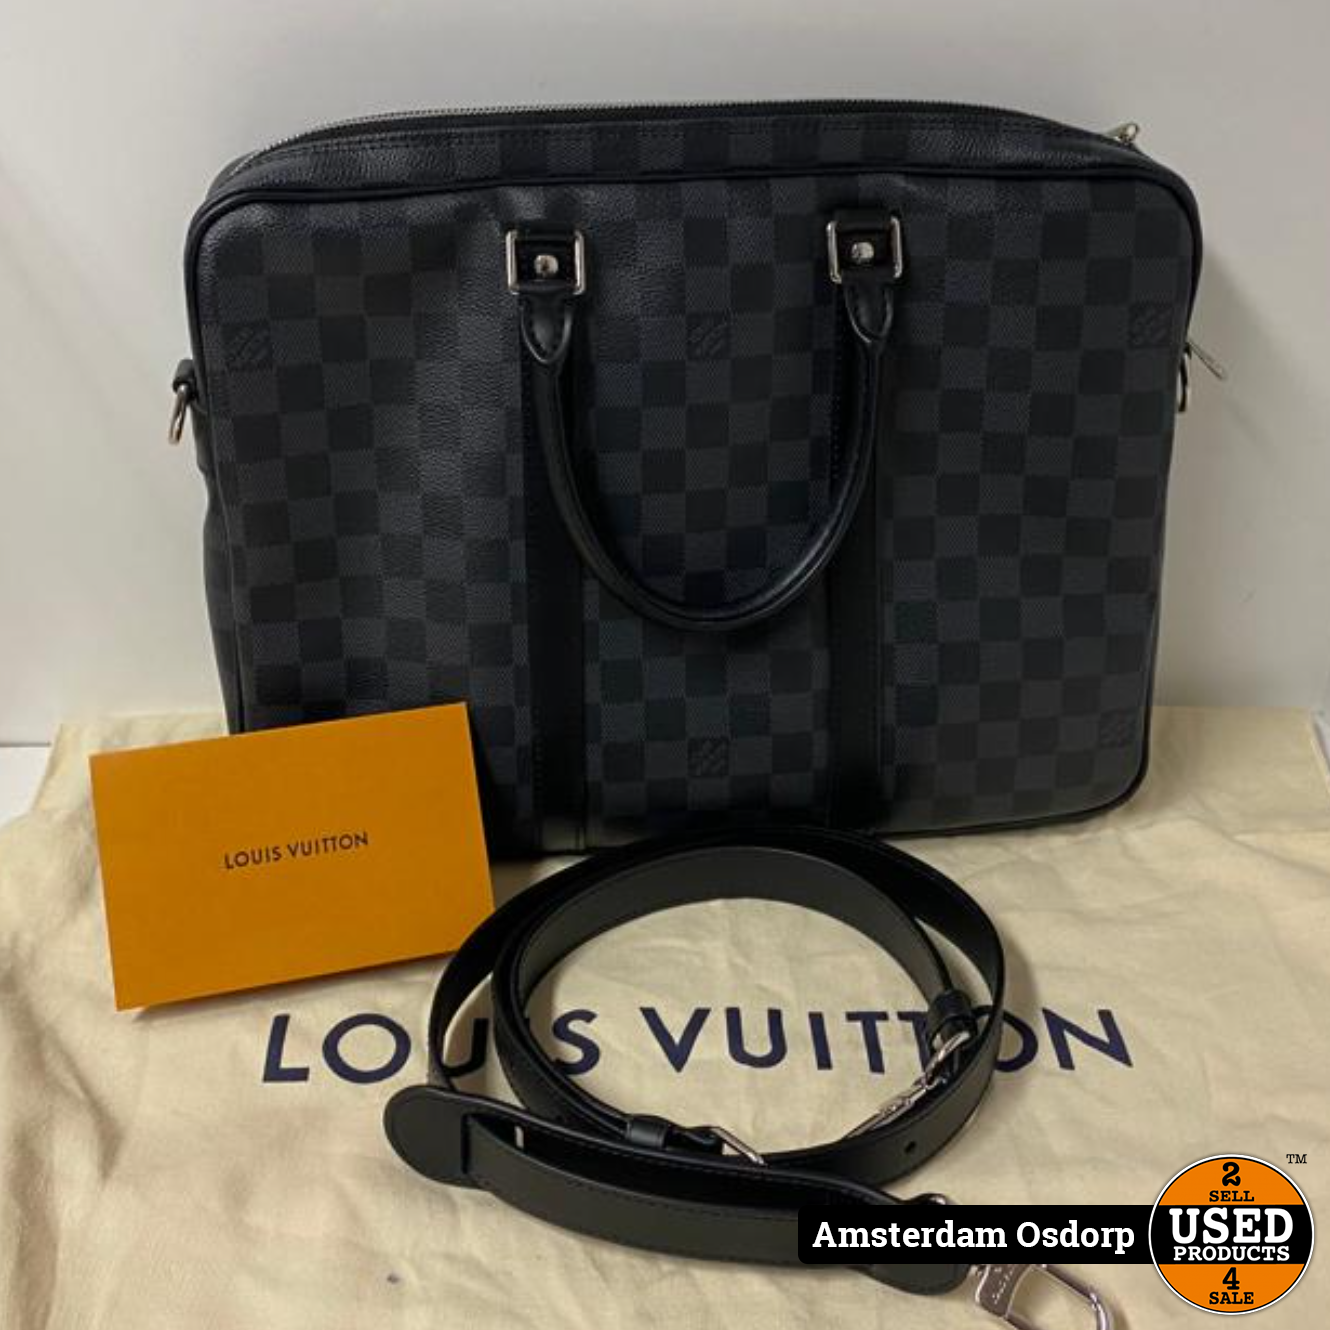 Shop Louis Vuitton MONOGRAM Porte-documents voyage pm (N41478) by